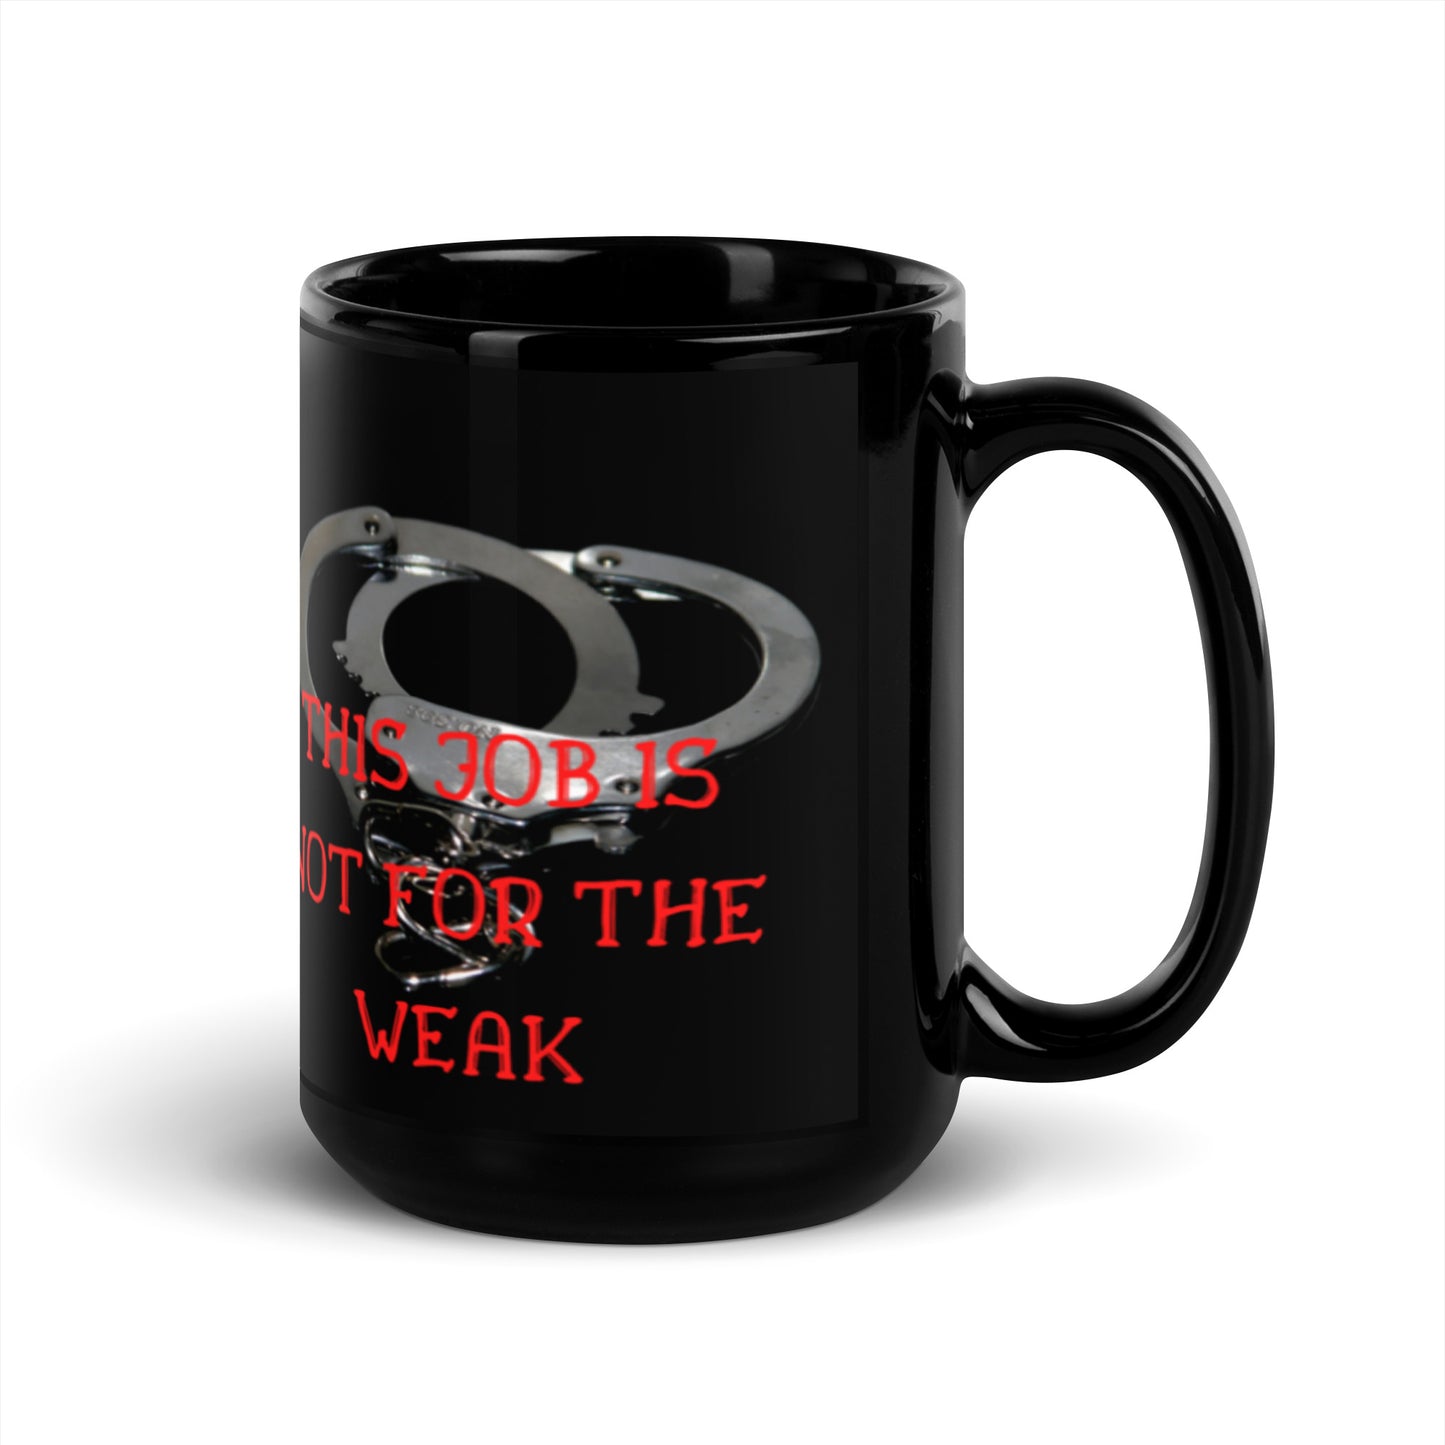 Not for the weak Mug